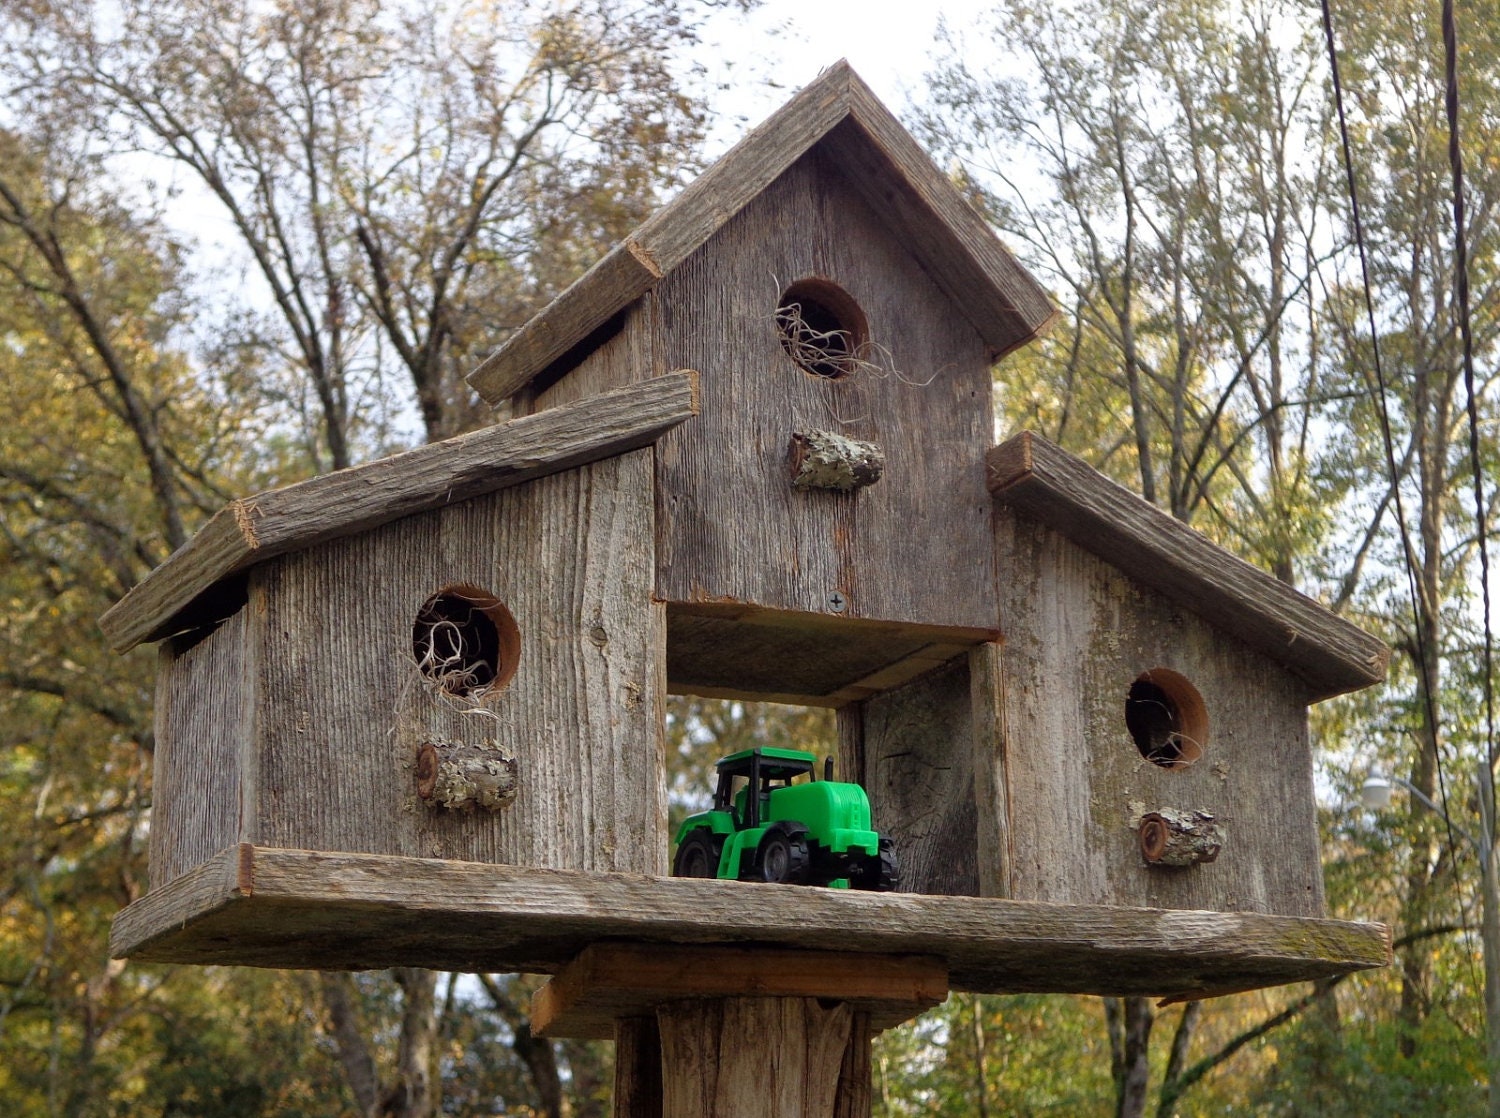 Rustic Reclaimed Cedar Birdhouse Barn